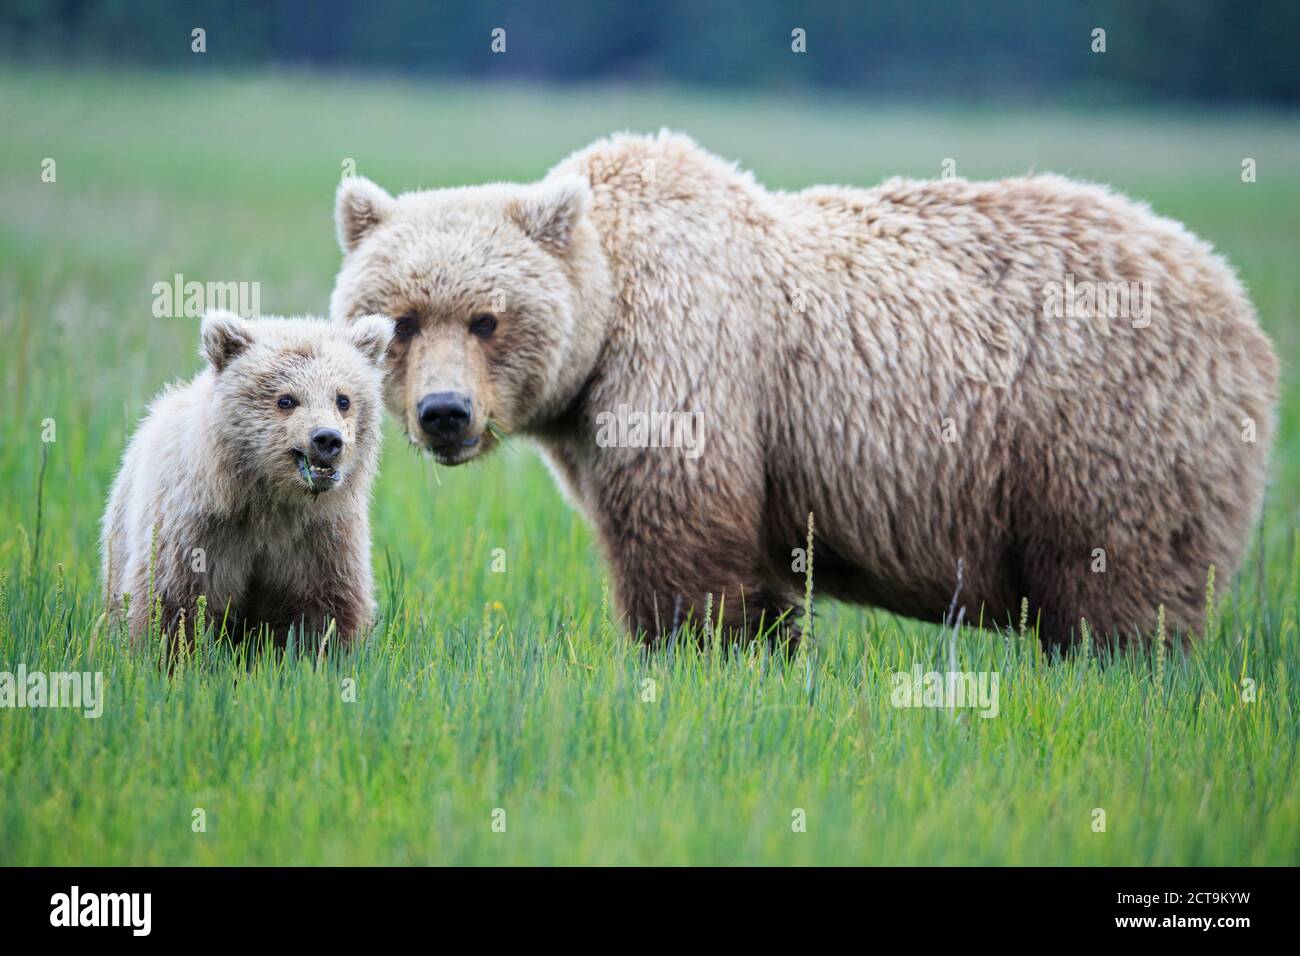 USA, Alaska, Lake Clark National Park and Preserve, Brown bear and bear cub (Ursus arctos) Stock Photo